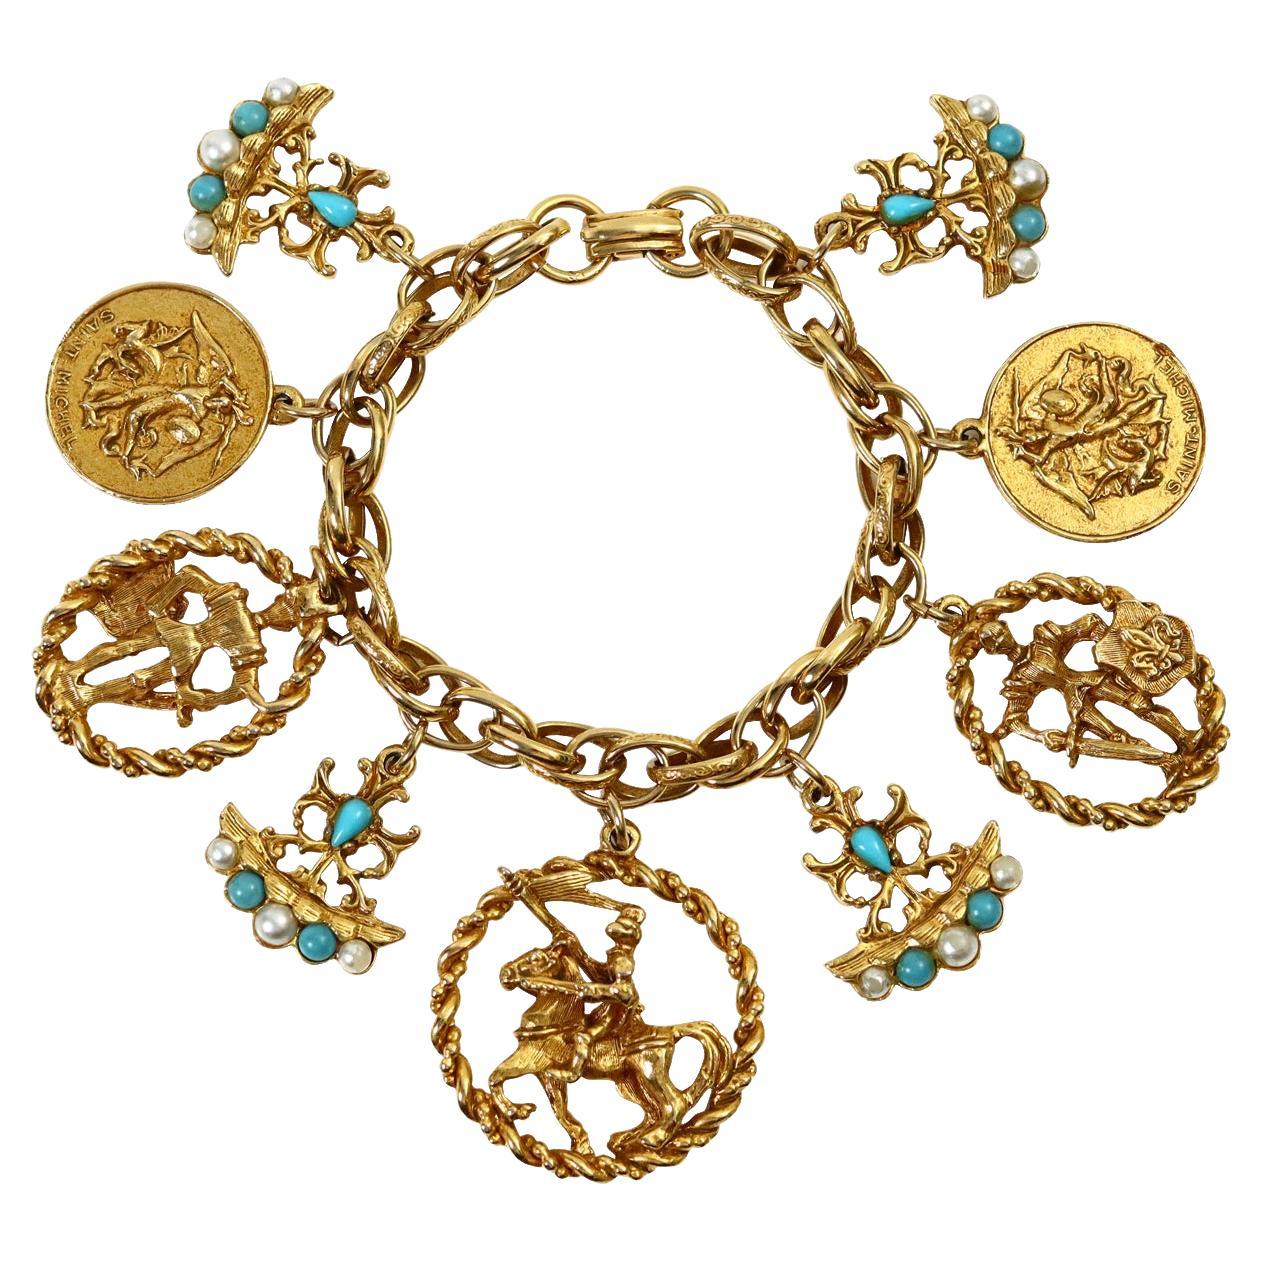 Vintage Gold und Faux Türkis Charm Armband Circa 1980's.  Dieses Charms-Armband enthält Charms mit verschiedenen Wappenmotiven. Der Pop kommt von den drei Armen, die mit Türkis- und Perlenimitaten besetzt sind, die sich wirklich von dem Gold